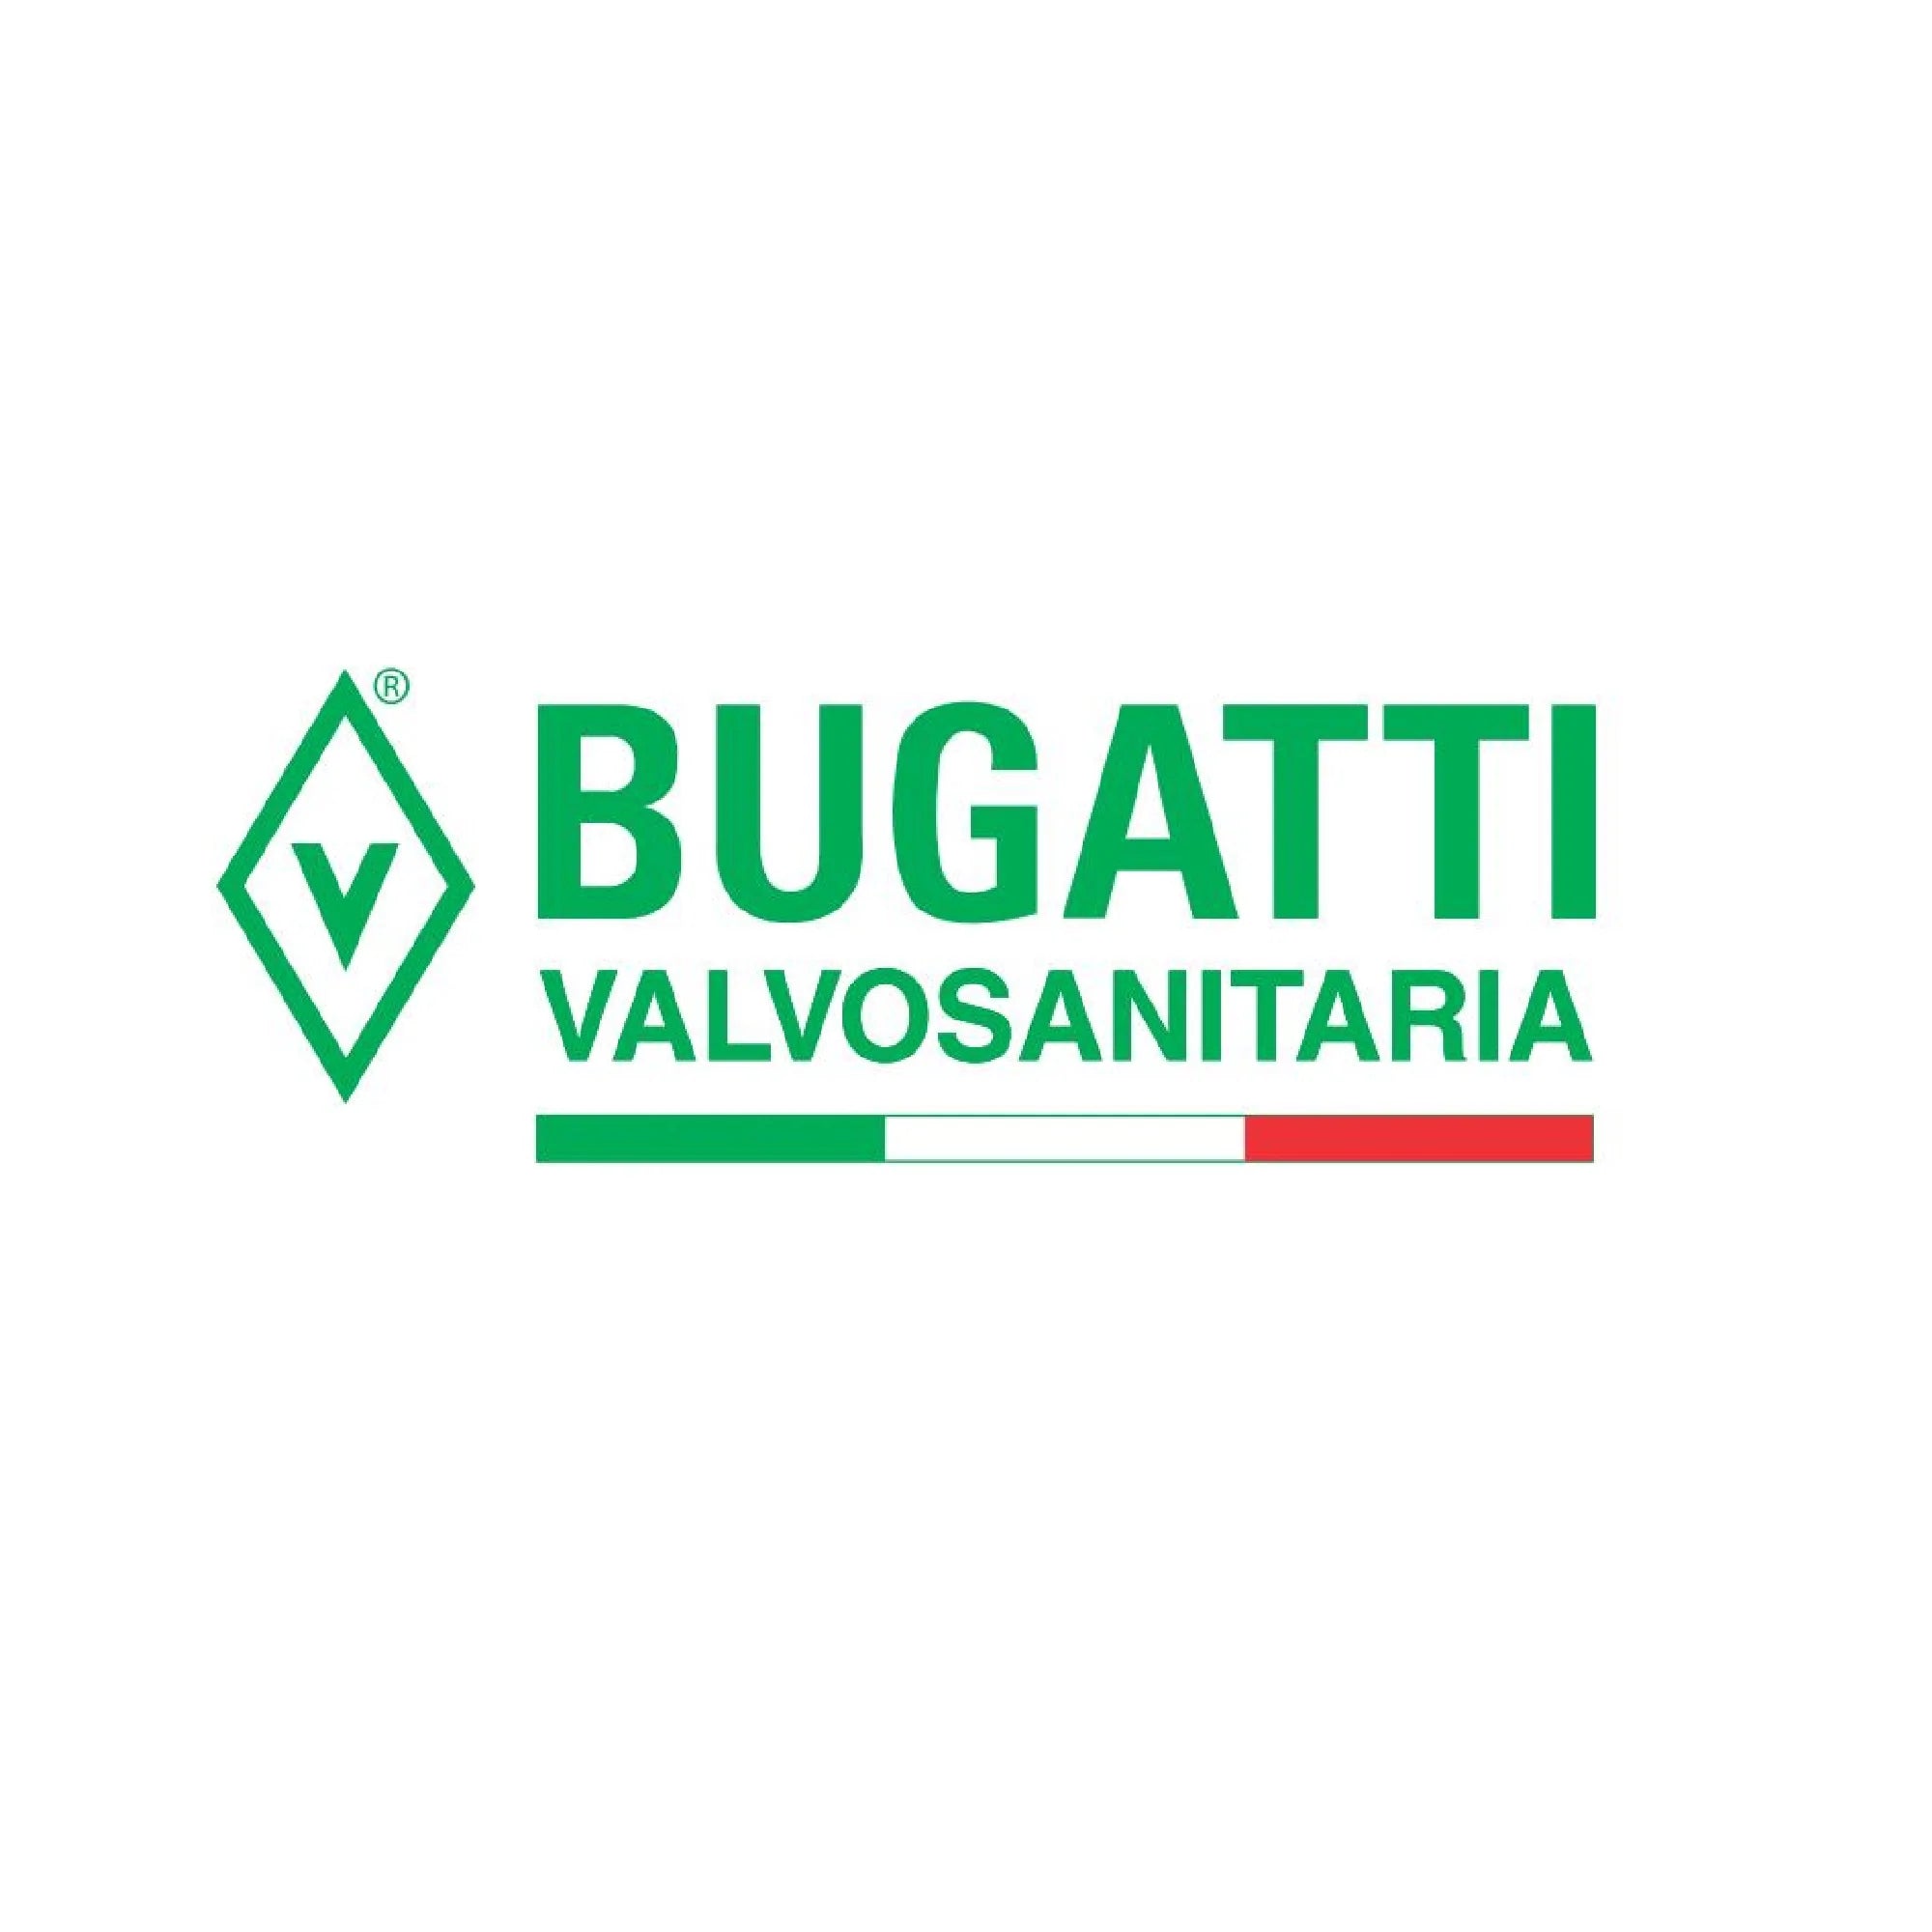 Valvosanitaria Bugatti